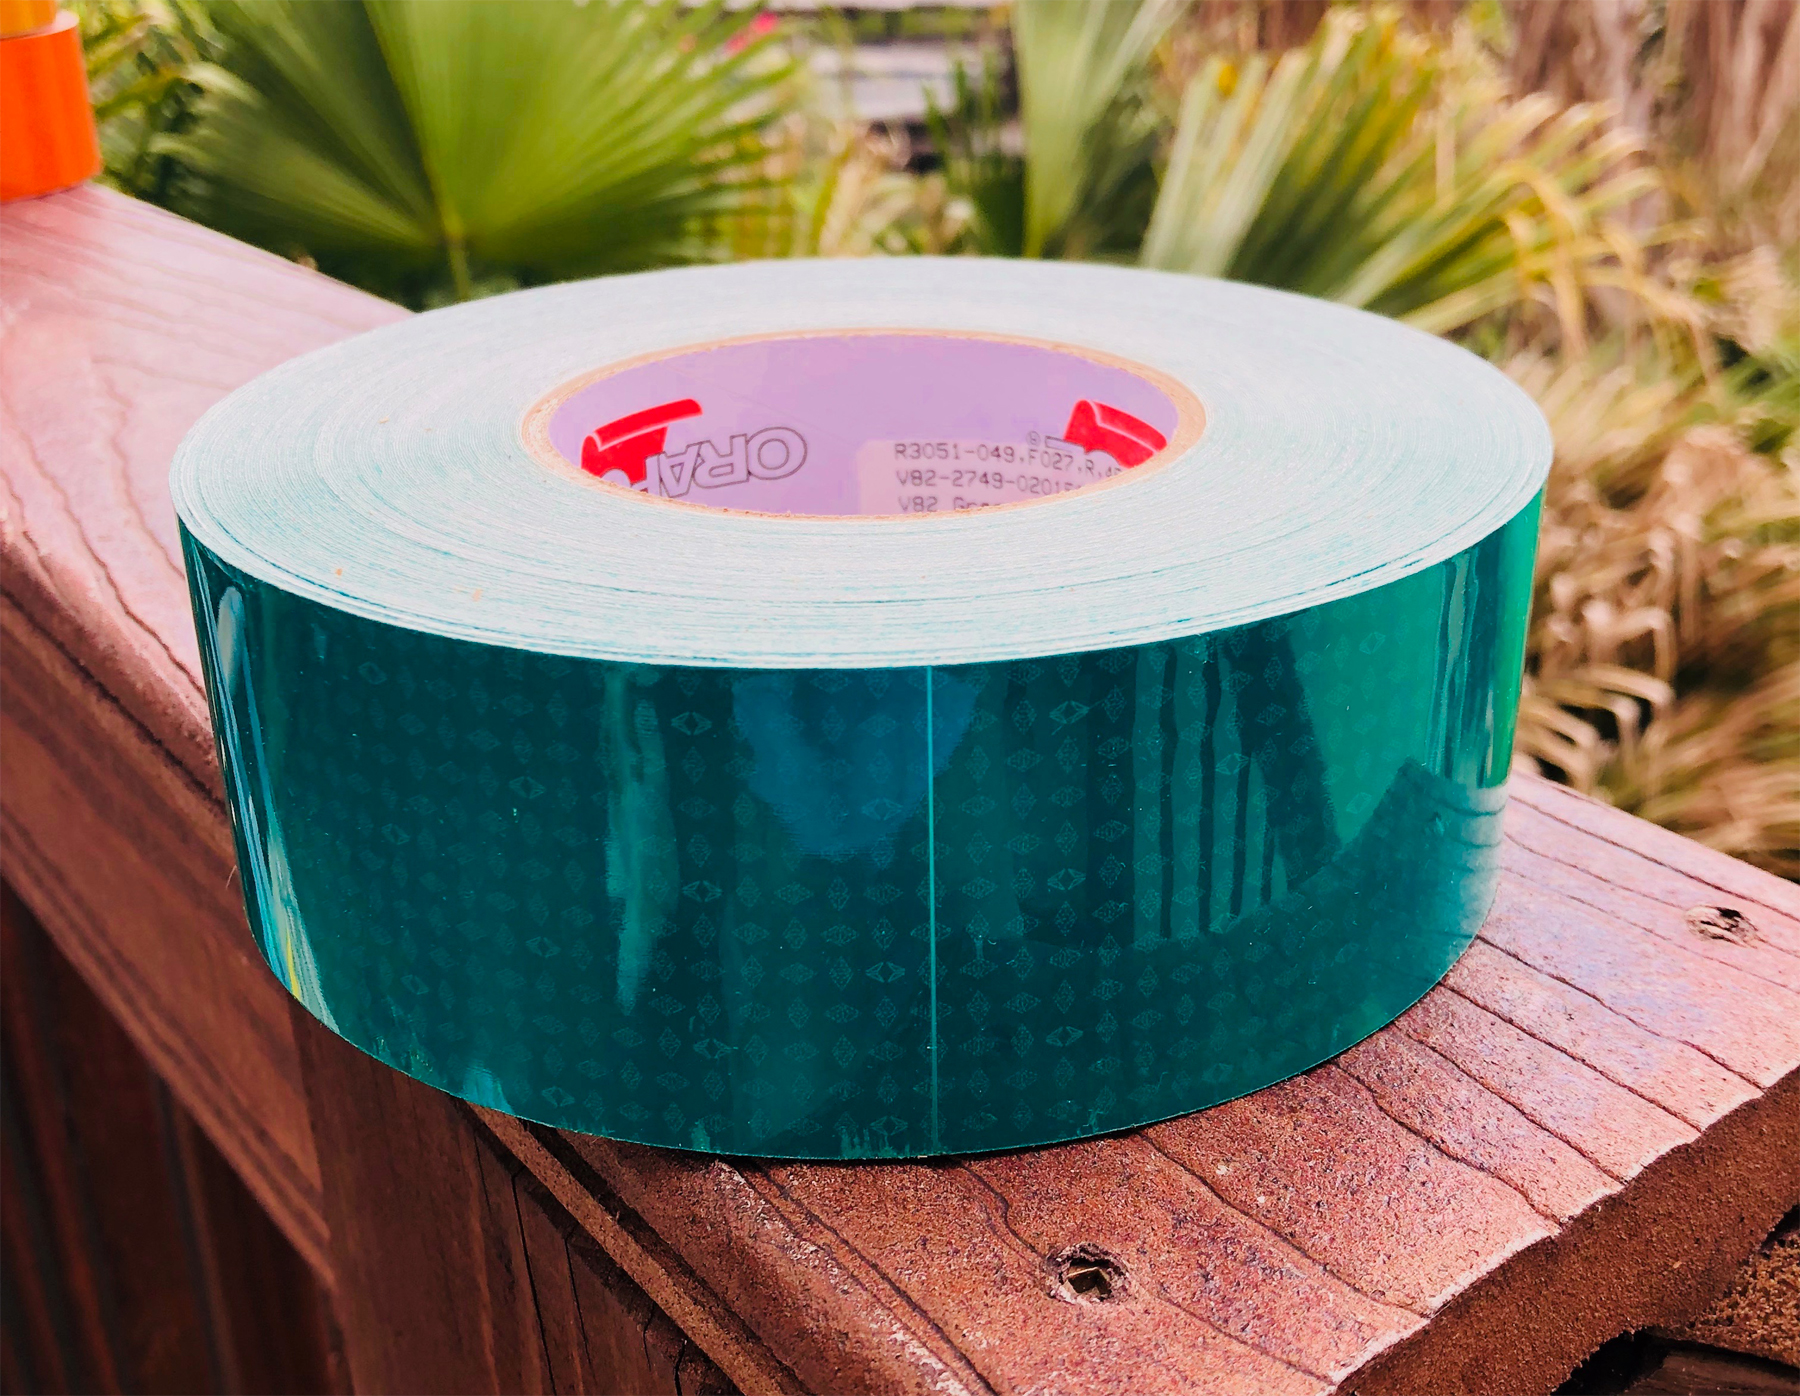 Oralite green v82 prismatic reflective tape